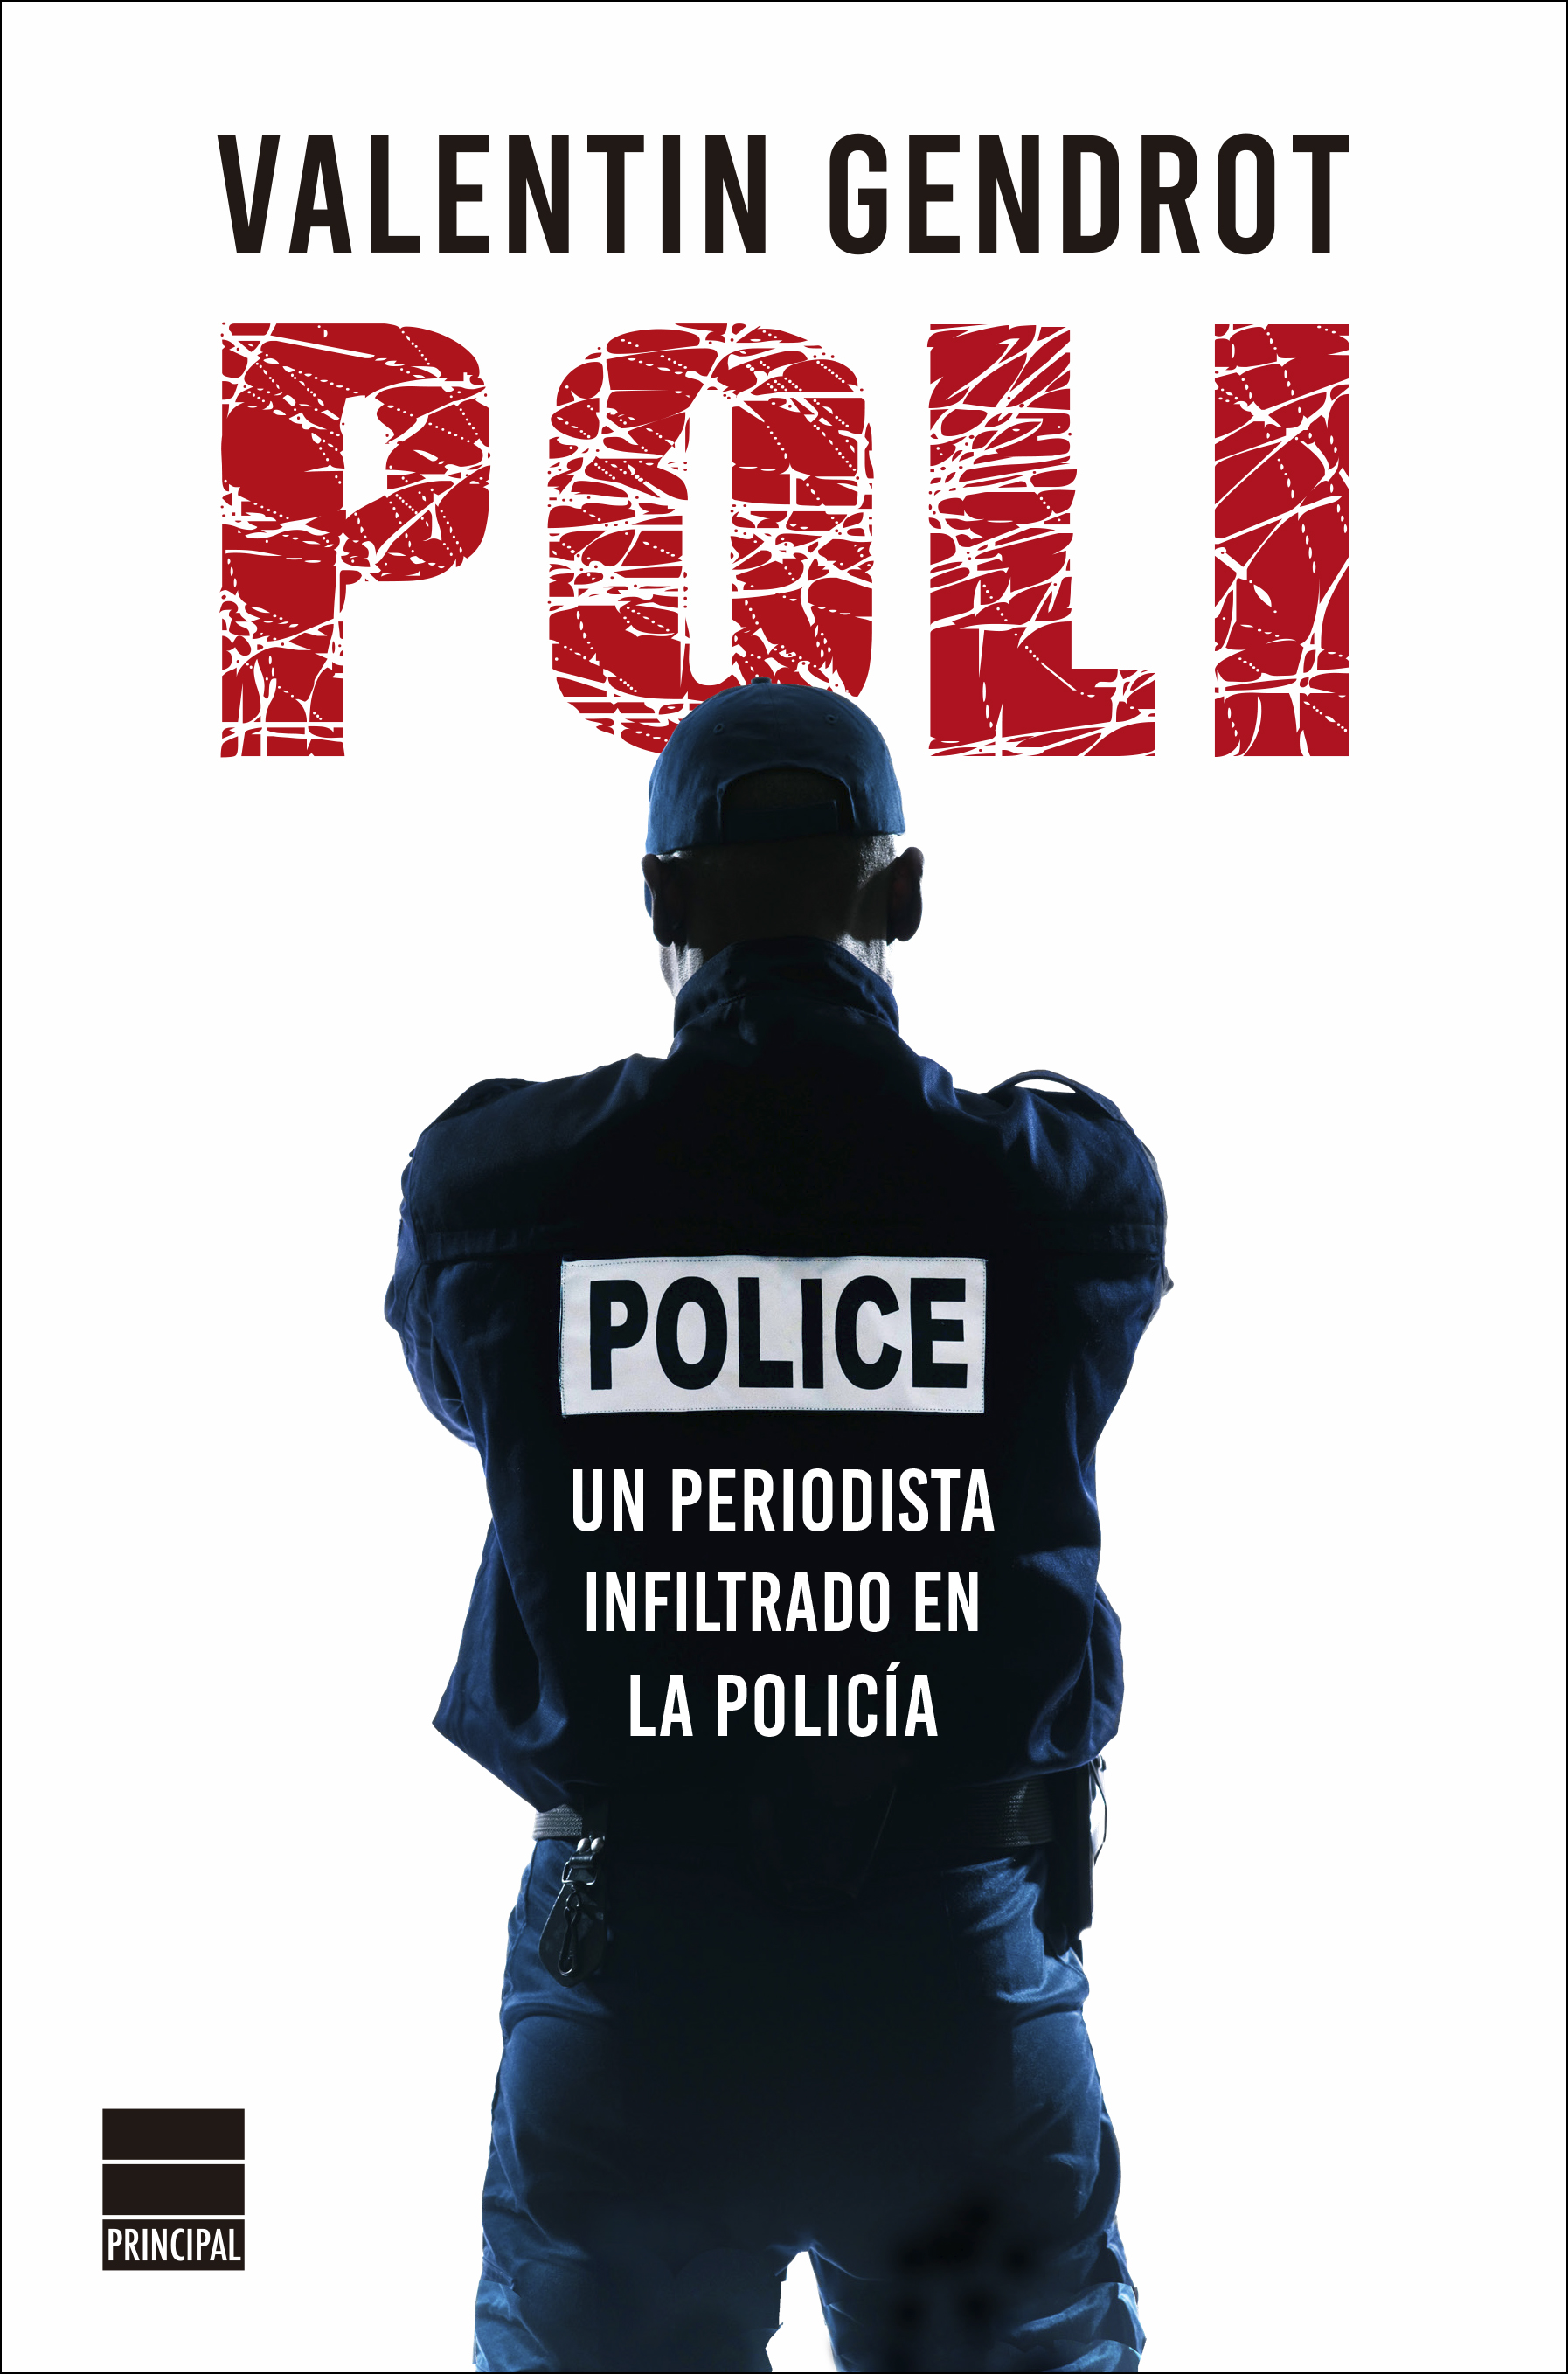 Poli "Un periodista infiltrado en la policía"